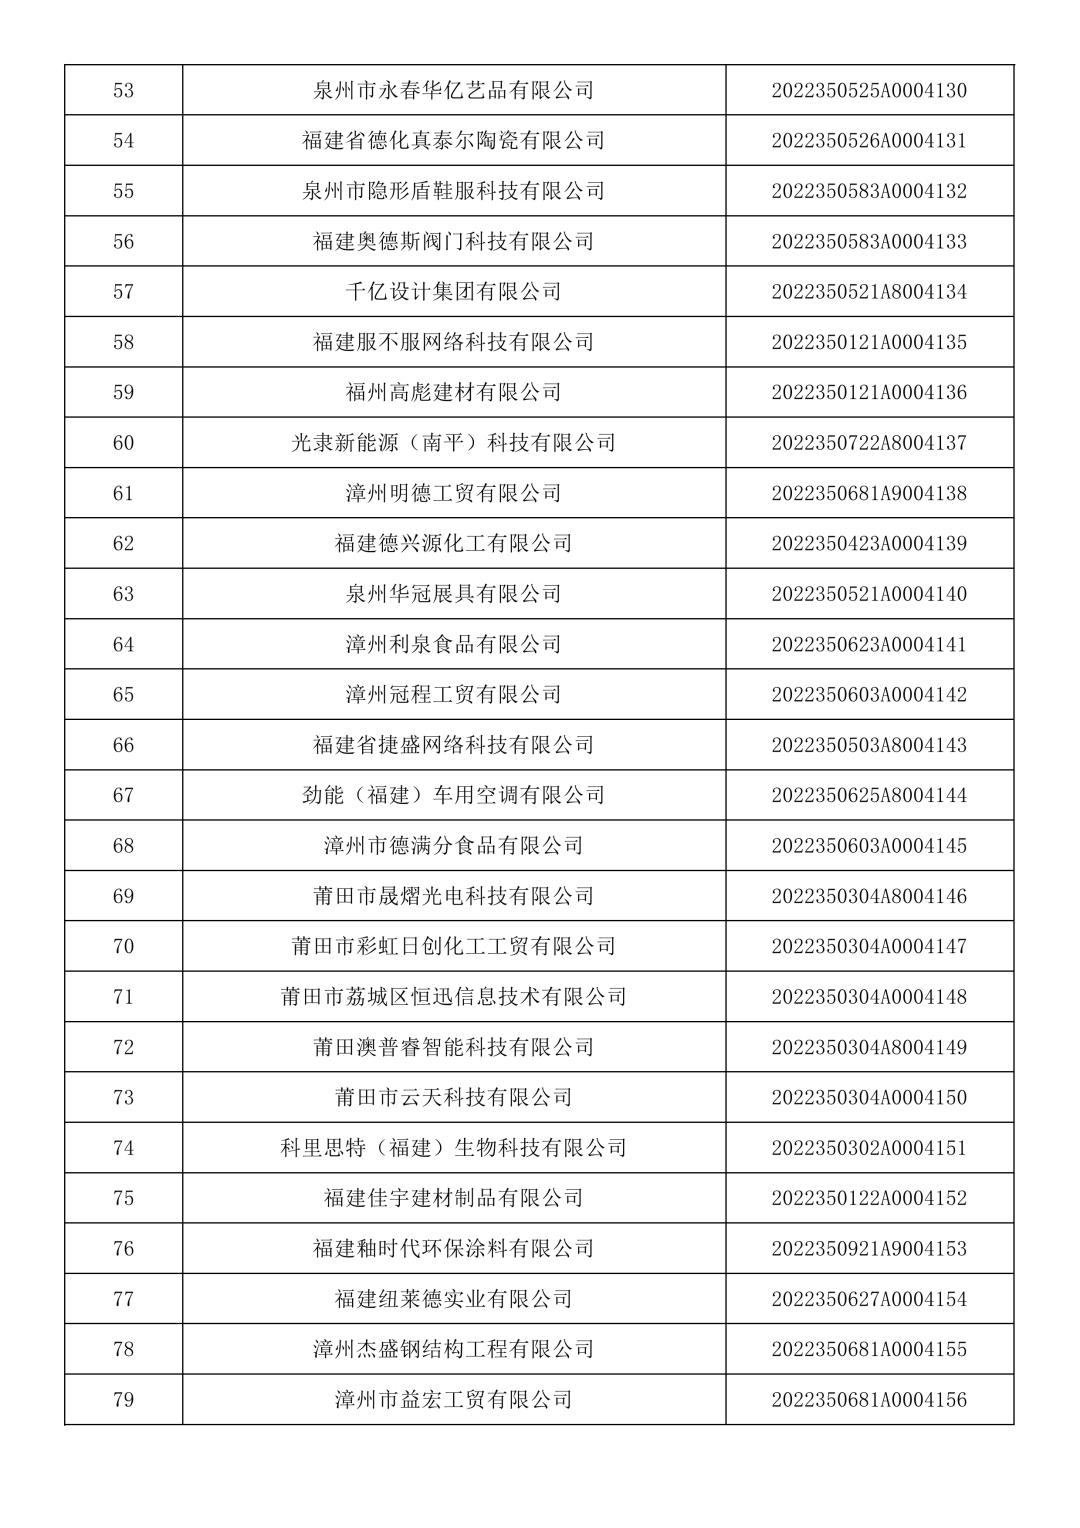 福建省2022年第七批入库科技型中小企业名单公布